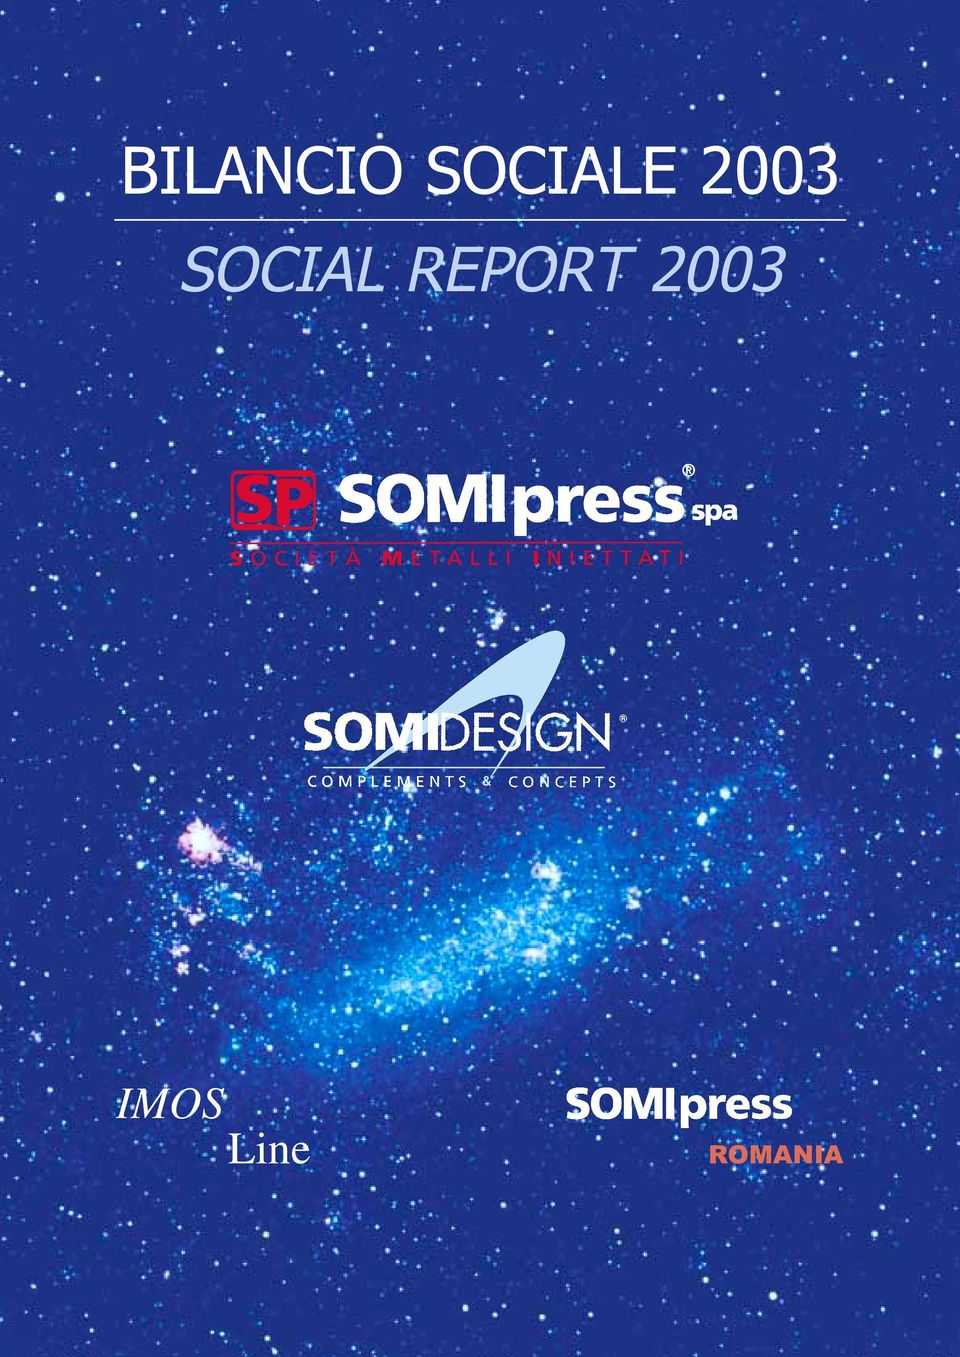 SOCIAL REPORT